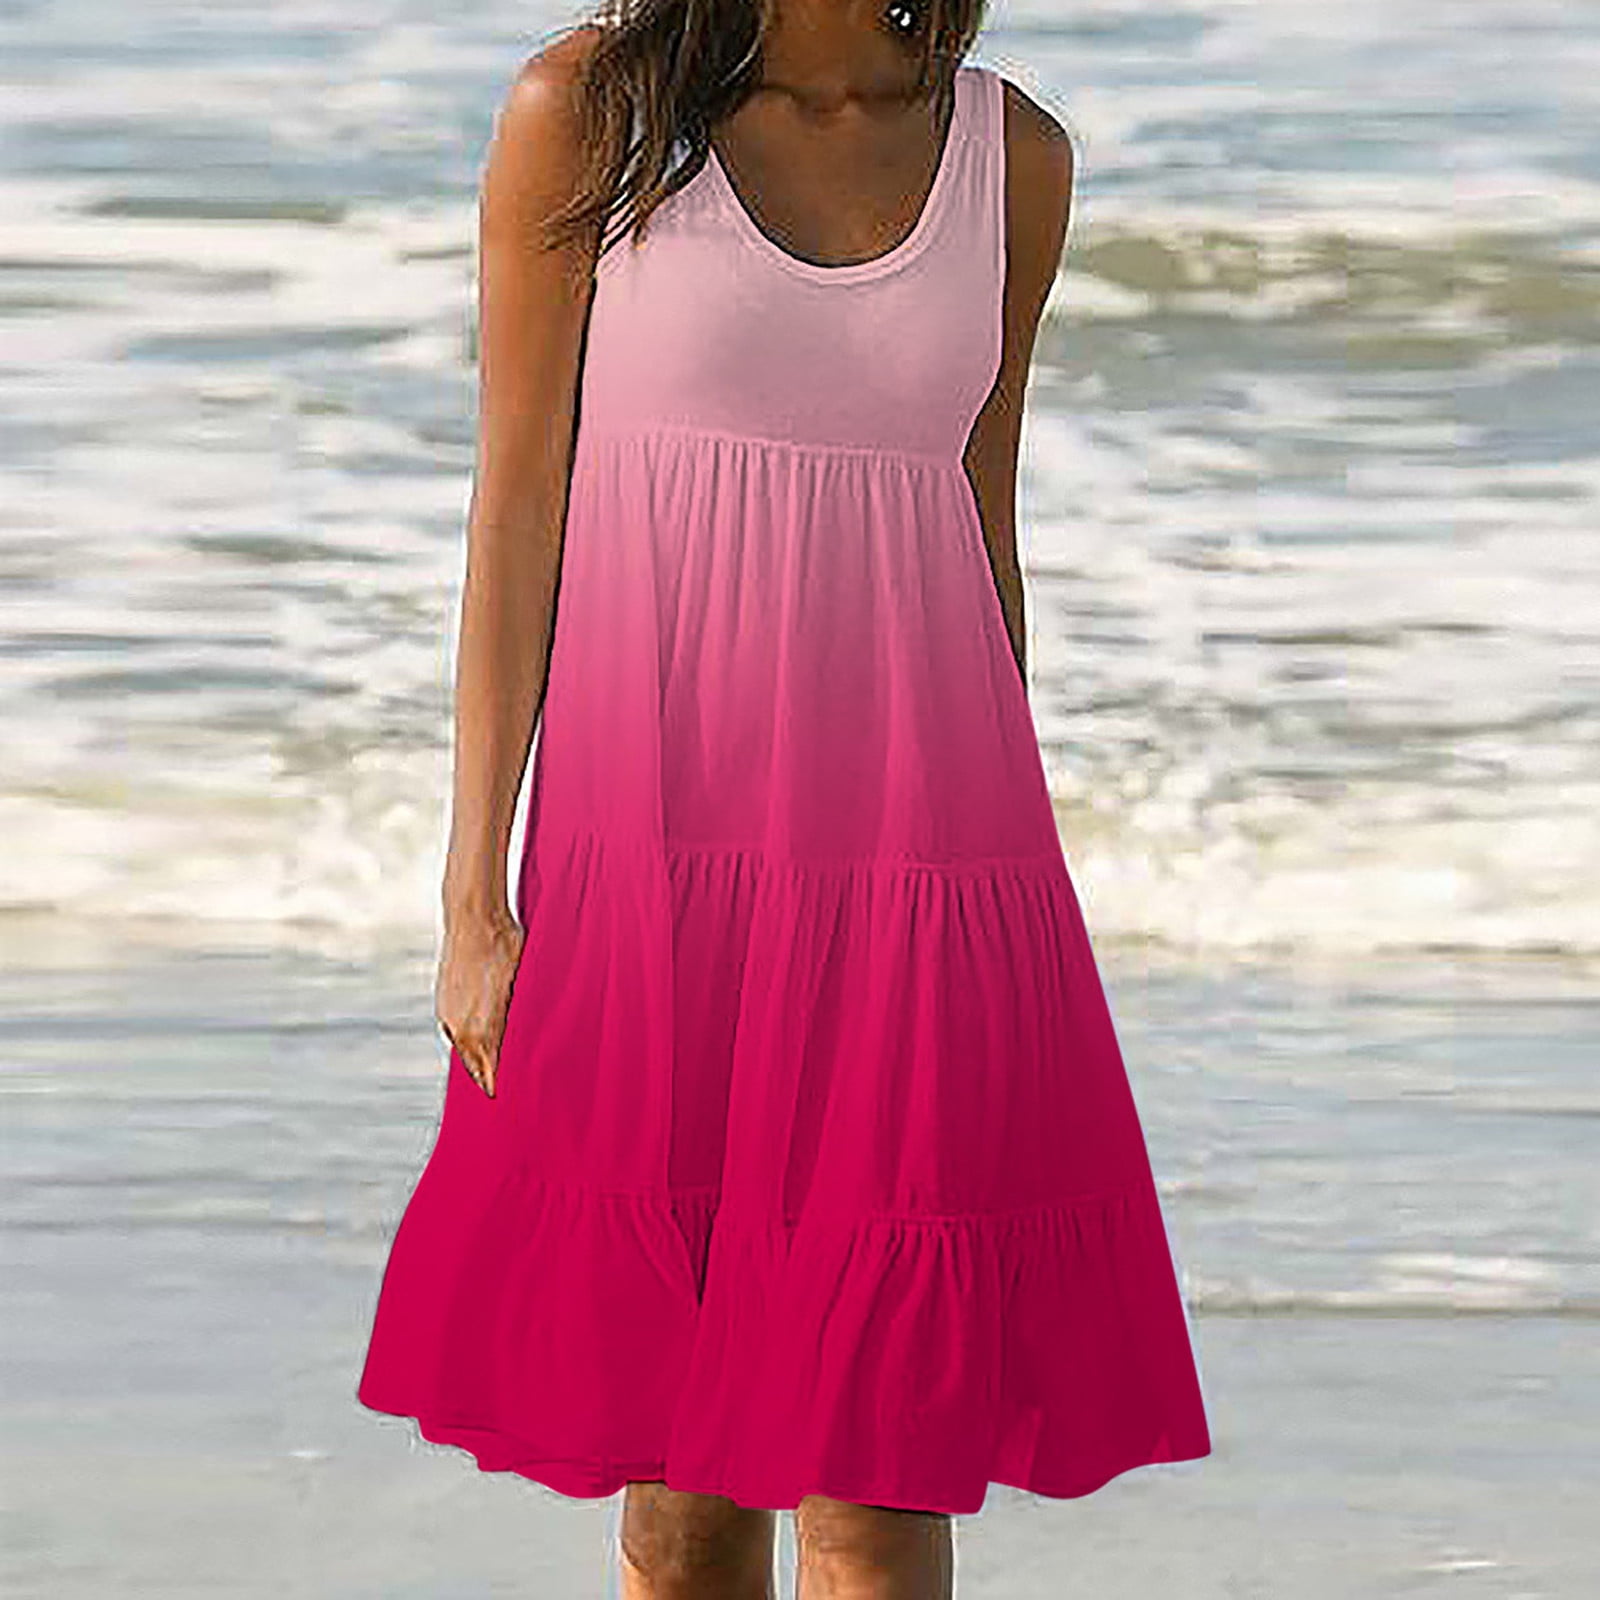 Women's Tie Dye Summer Sleeveless Dress Casual Loose Tank T-Shirt Short Sundress